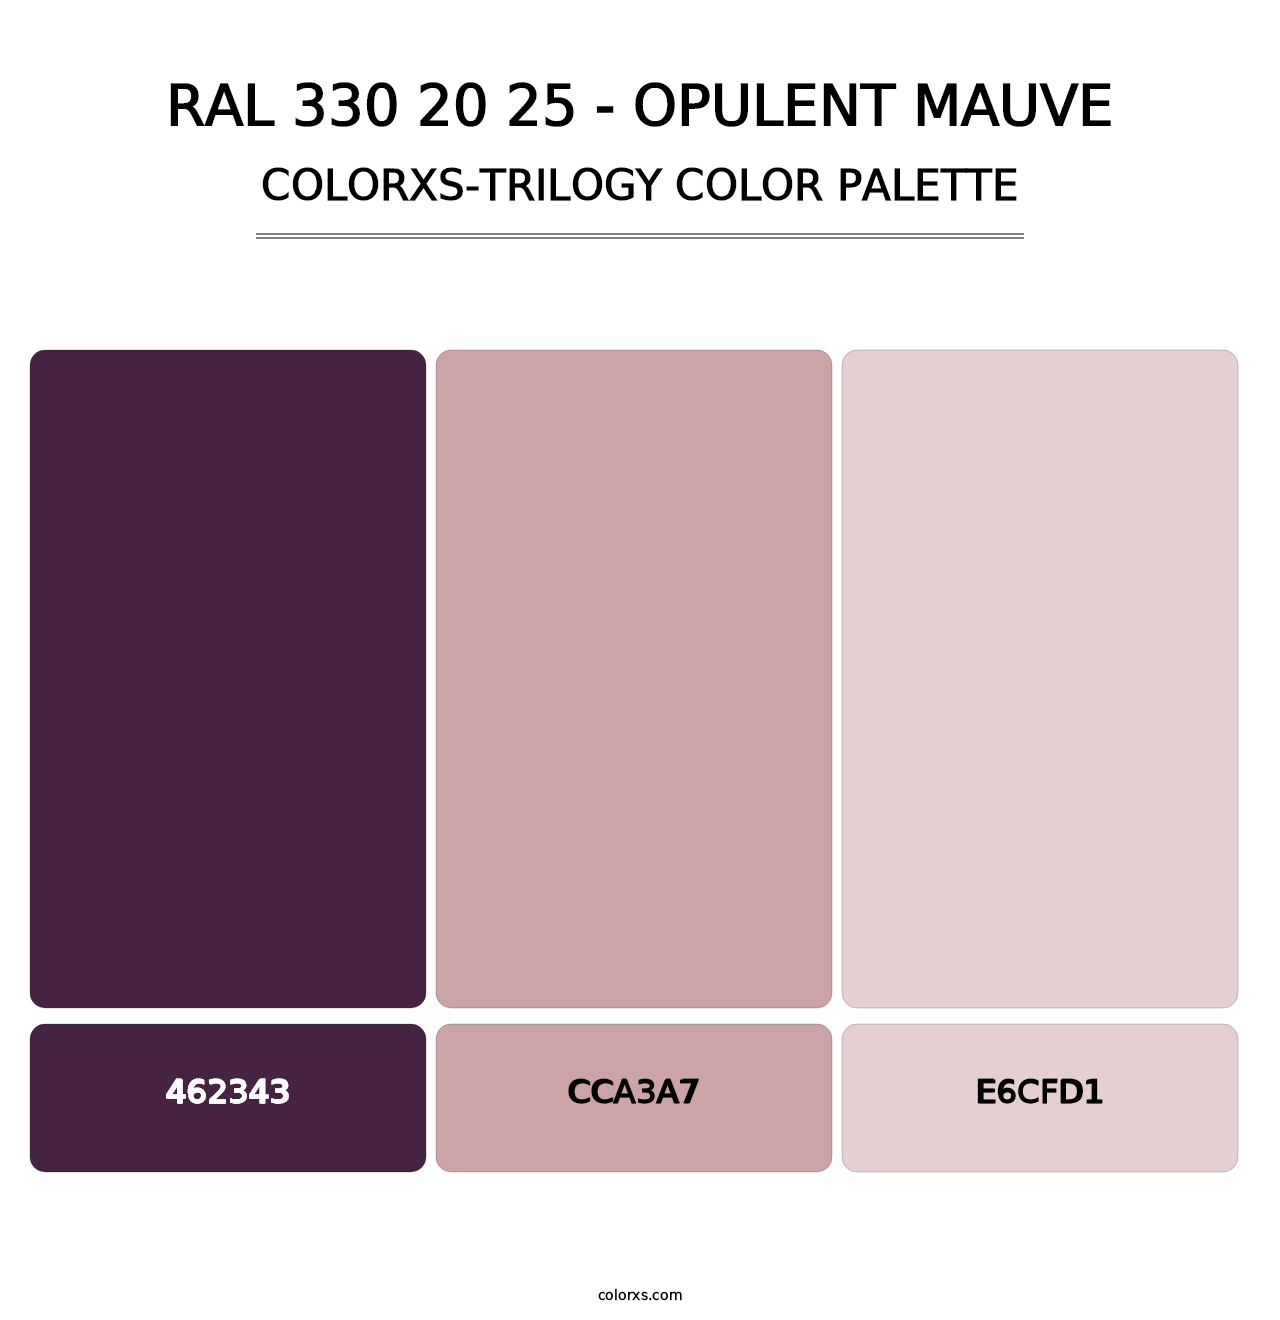 RAL 330 20 25 - Opulent Mauve - Colorxs Trilogy Palette